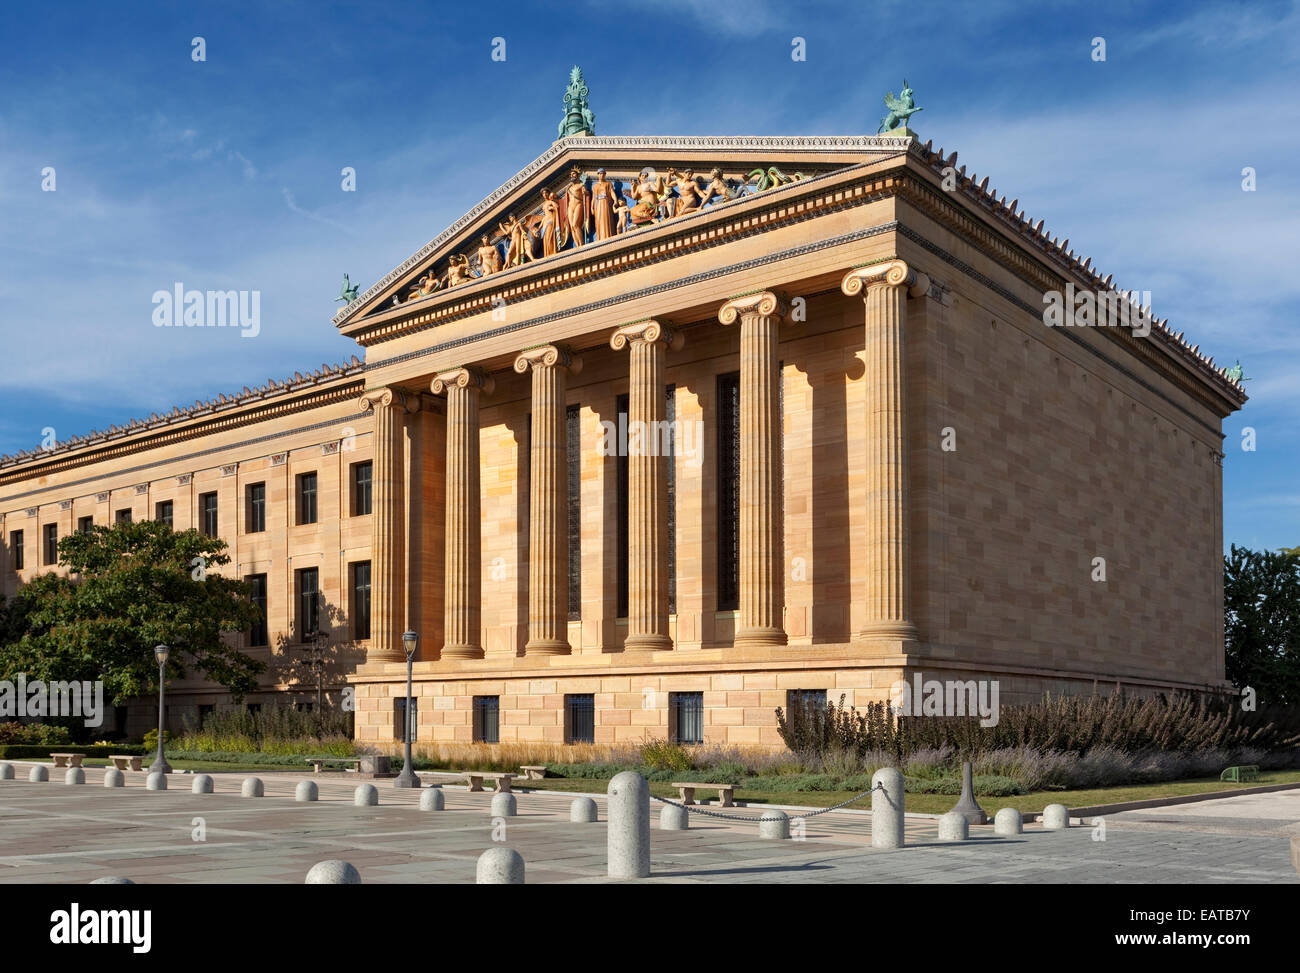 L'architecture grecque classique... Le Philadelphia Museum of Art est parmi les plus grands musées d'art aux États-Unis. Banque D'Images